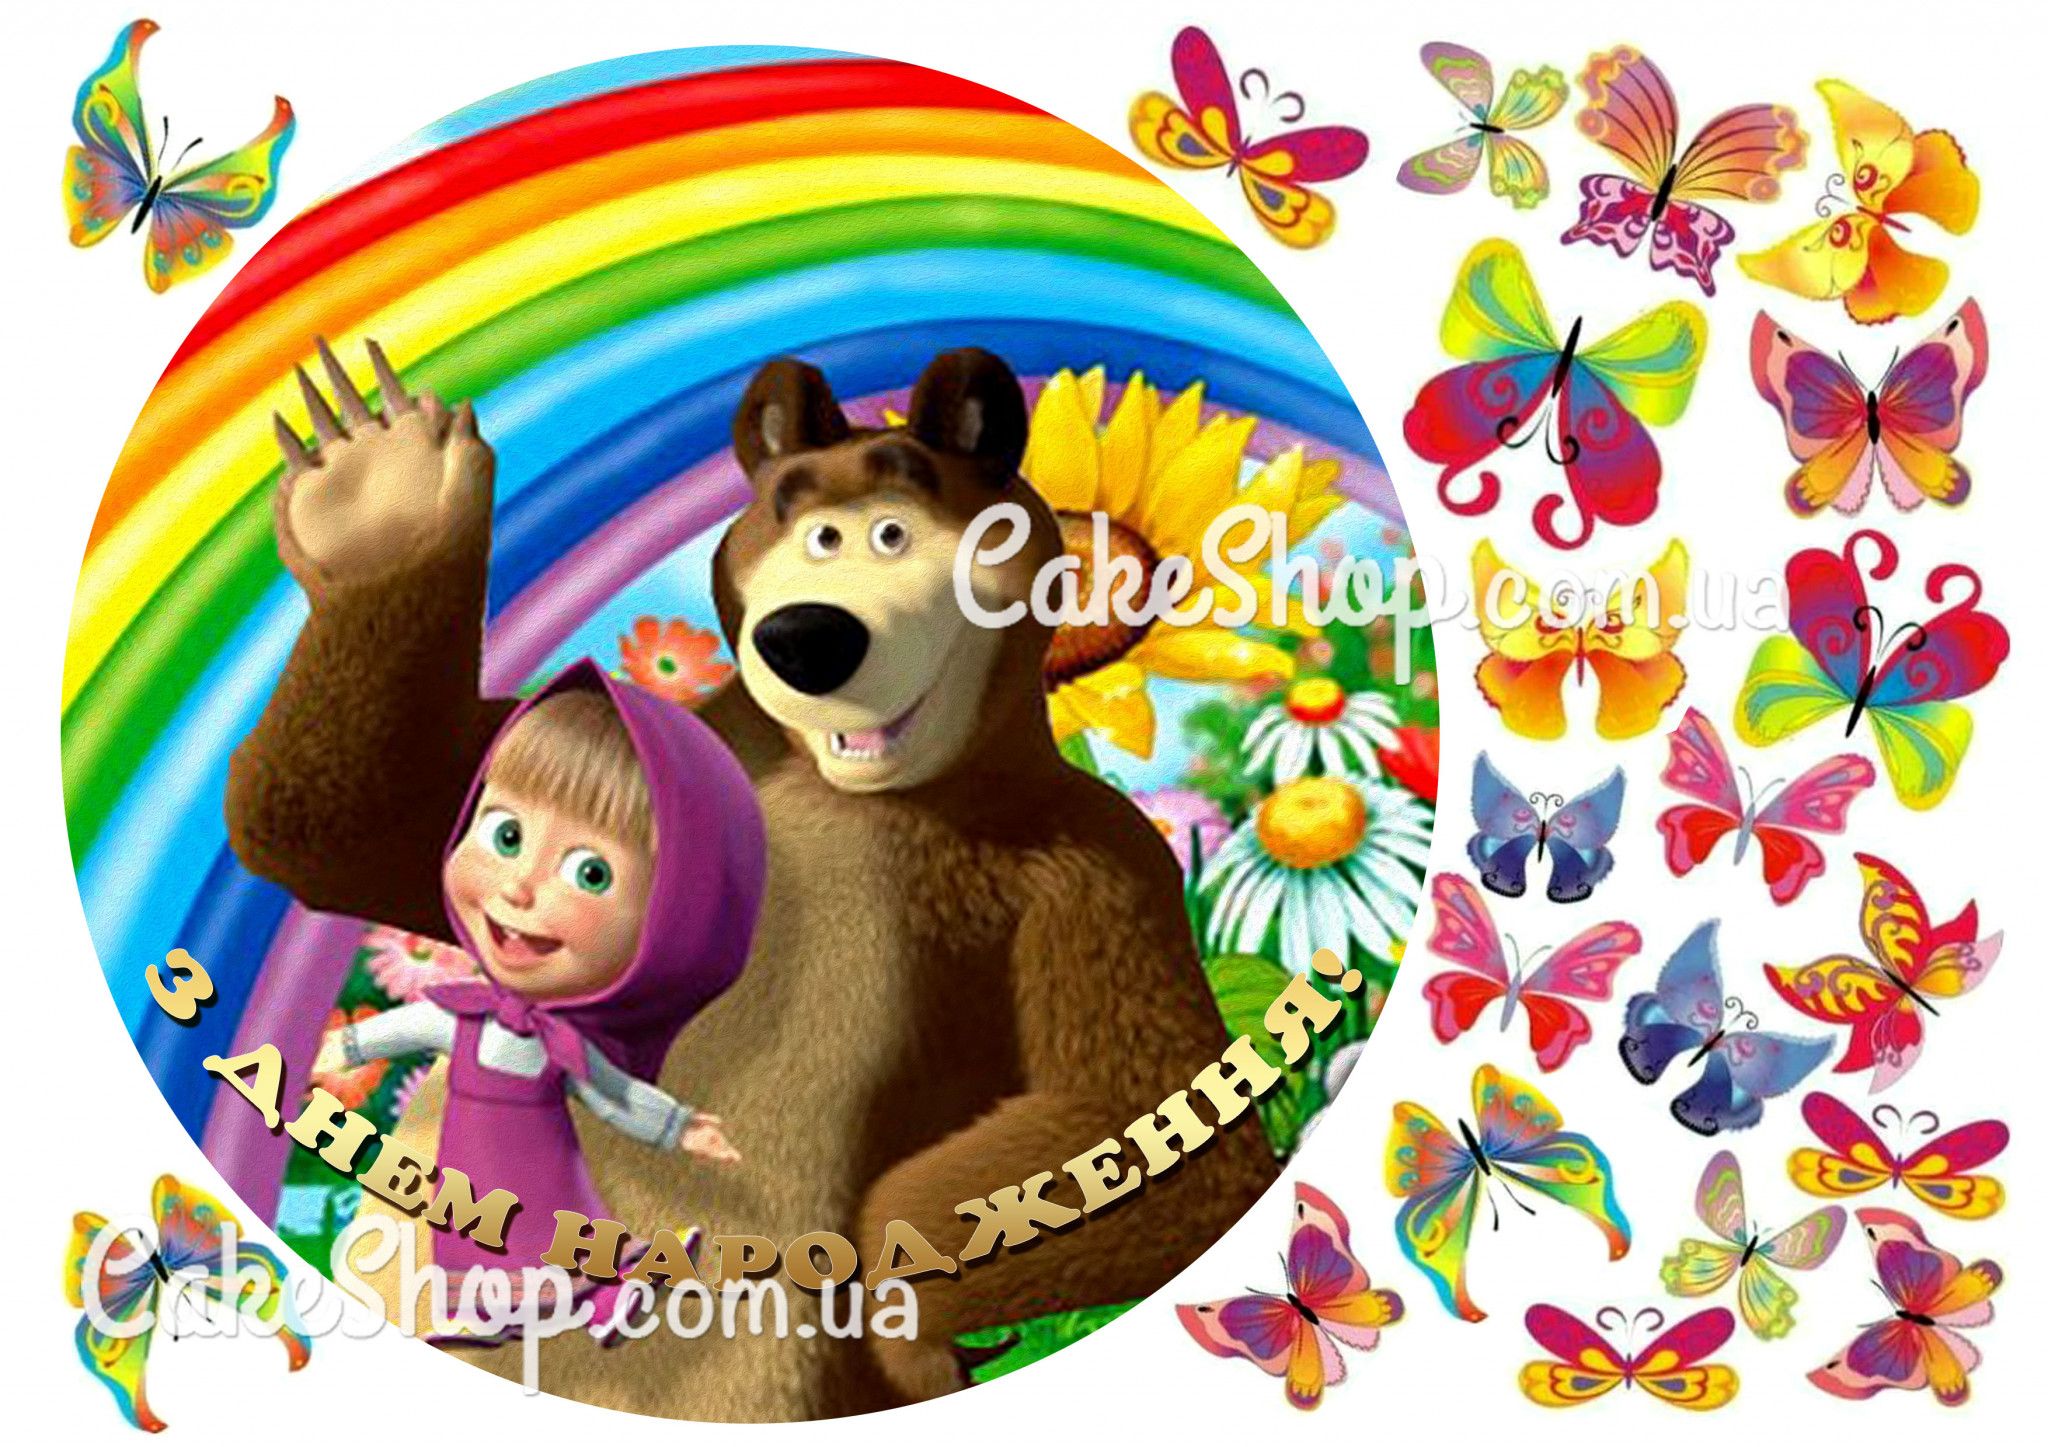 ⋗ Сахарная картинка Маша и Медведь 13 купить в Украине ➛ CakeShop.com.ua, фото